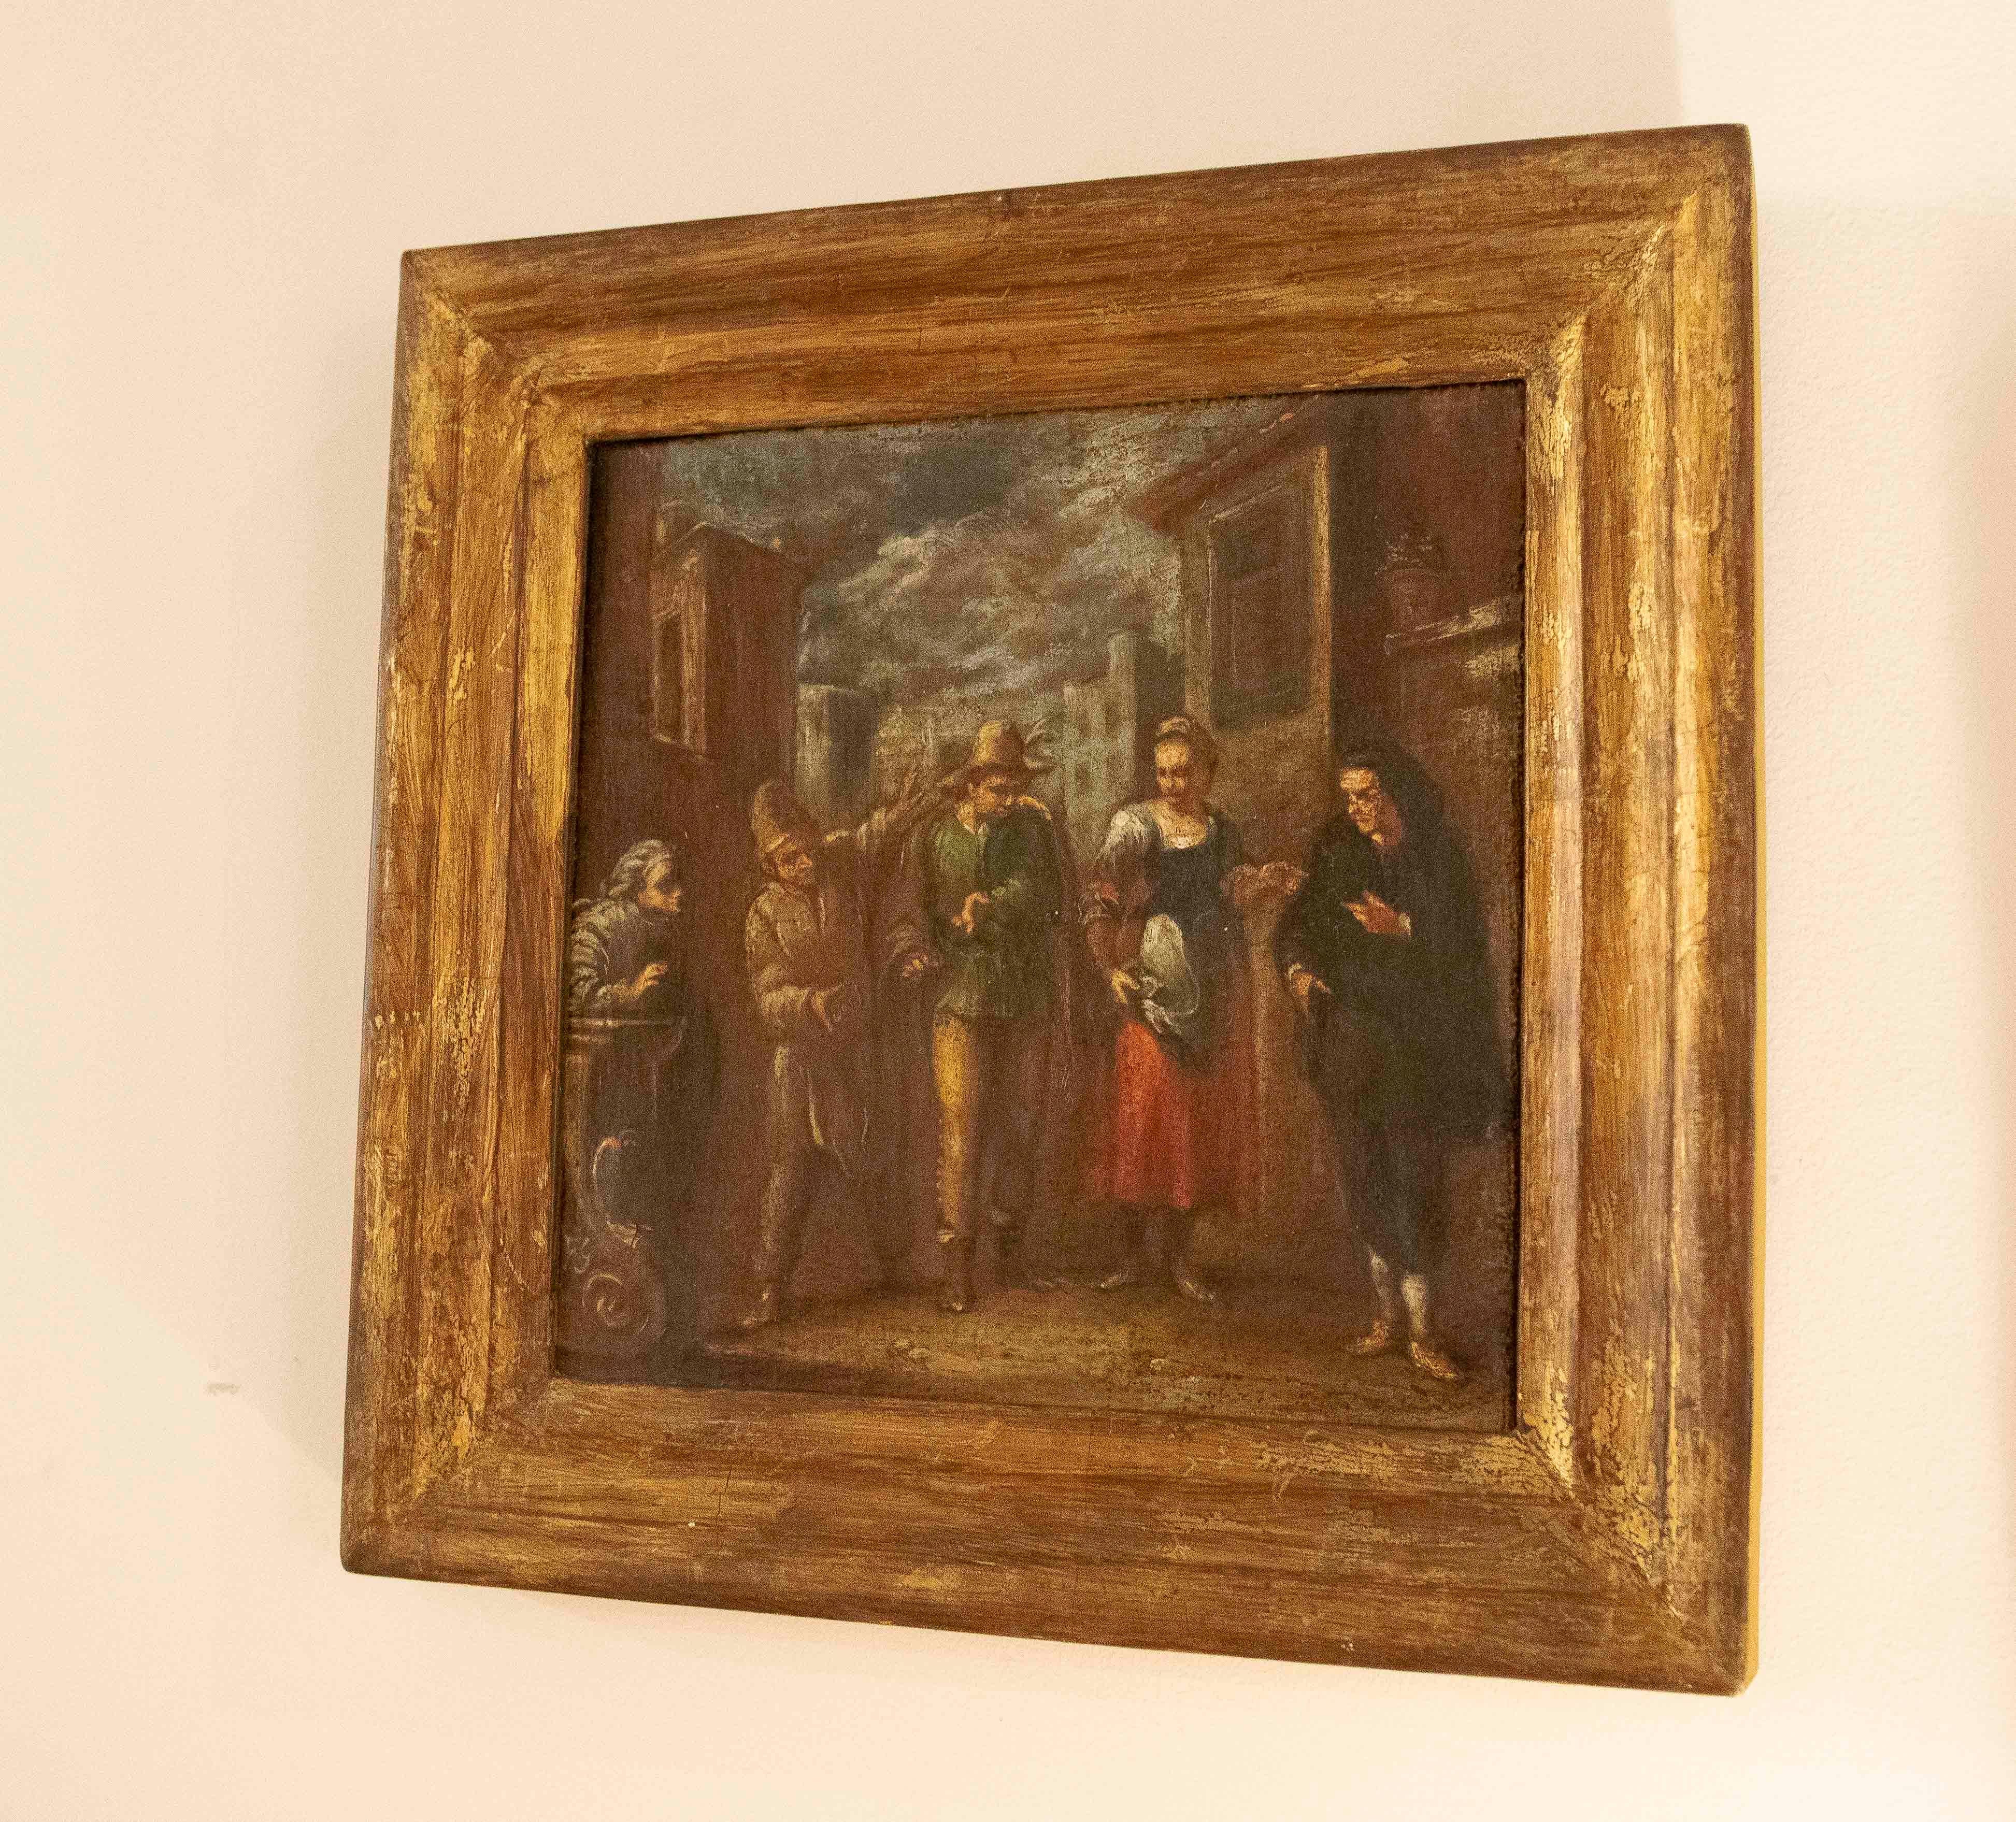 Gemälde mit Figuren in Öl auf Leinwand aus dem 18. Jahrhundert.  Das Gemälde stellt Figuren in einer alltäglichen Straßenszene dar, der Rahmen ist aus vergoldetem Holz, auf der Rückseite befindet sich eine Kuriosität, nämlich eine Krone und einige